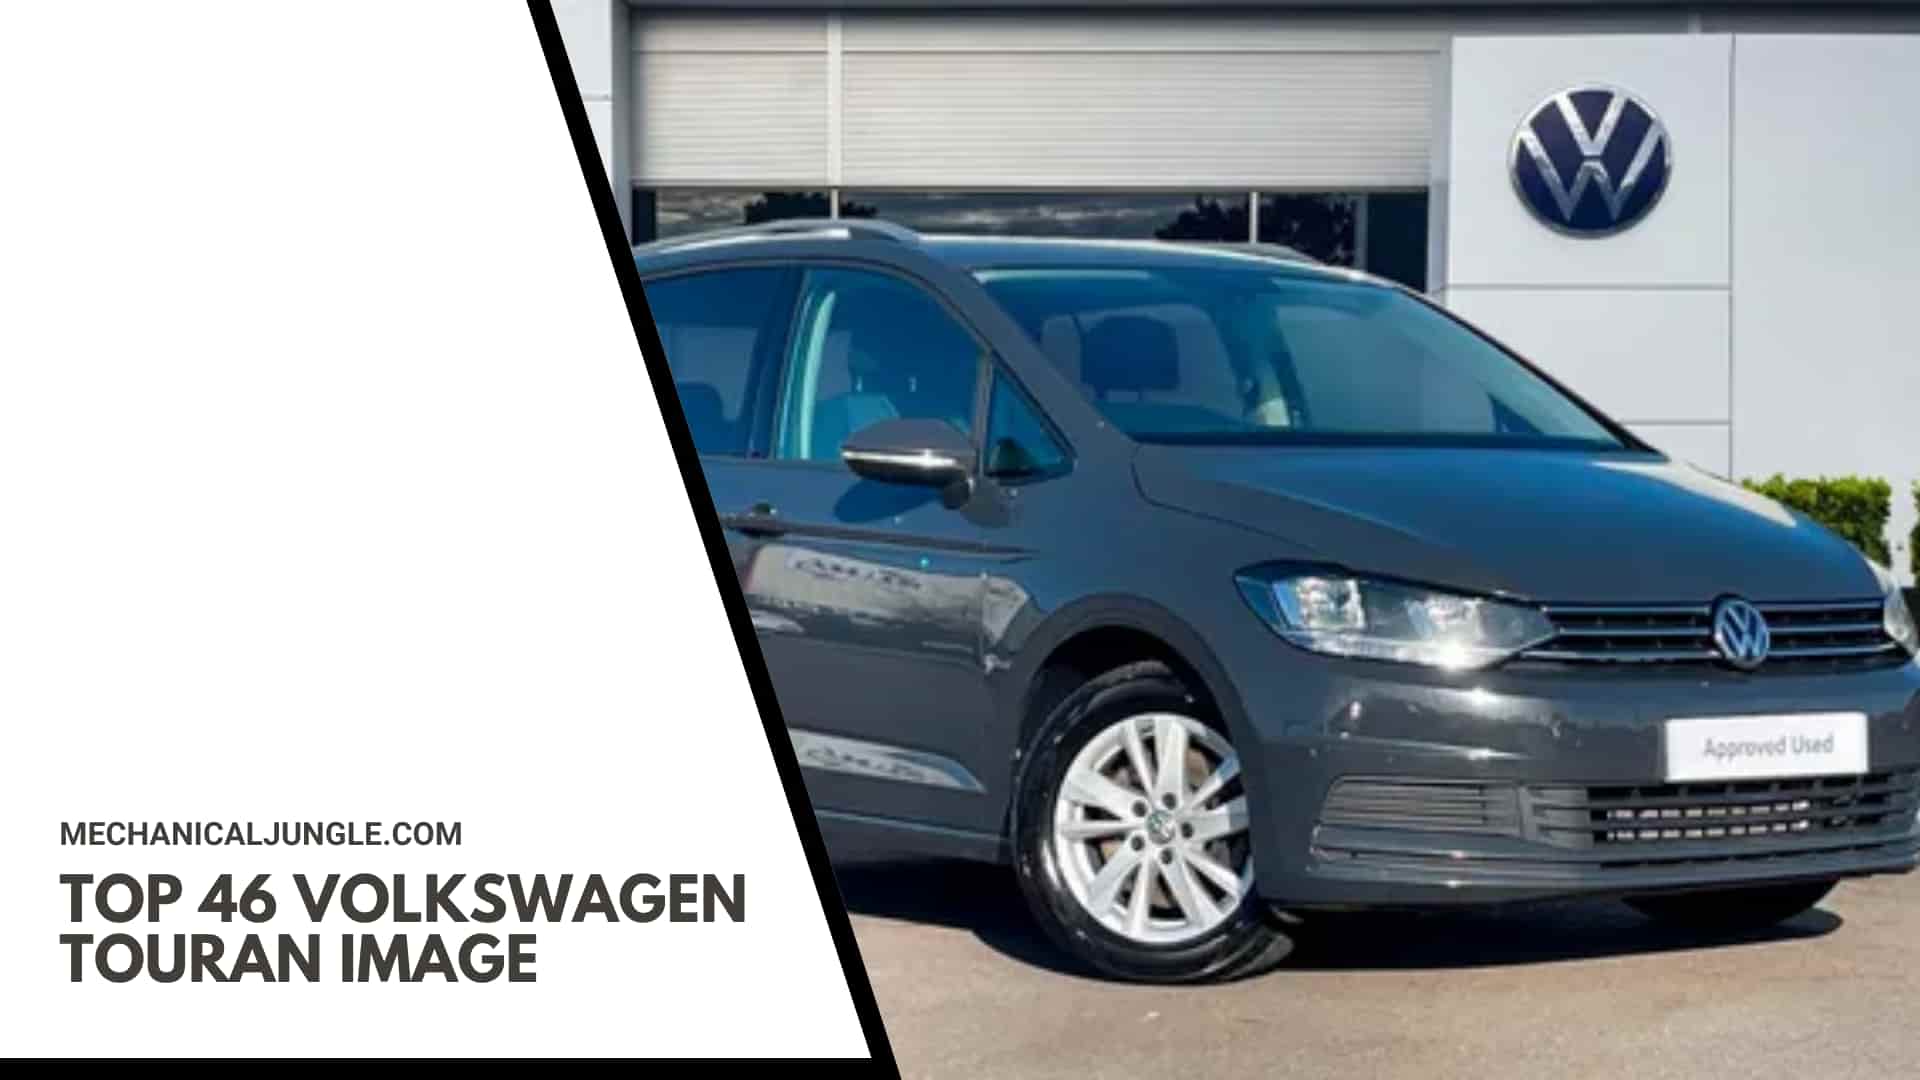 Top 46 Volkswagen Touran Image